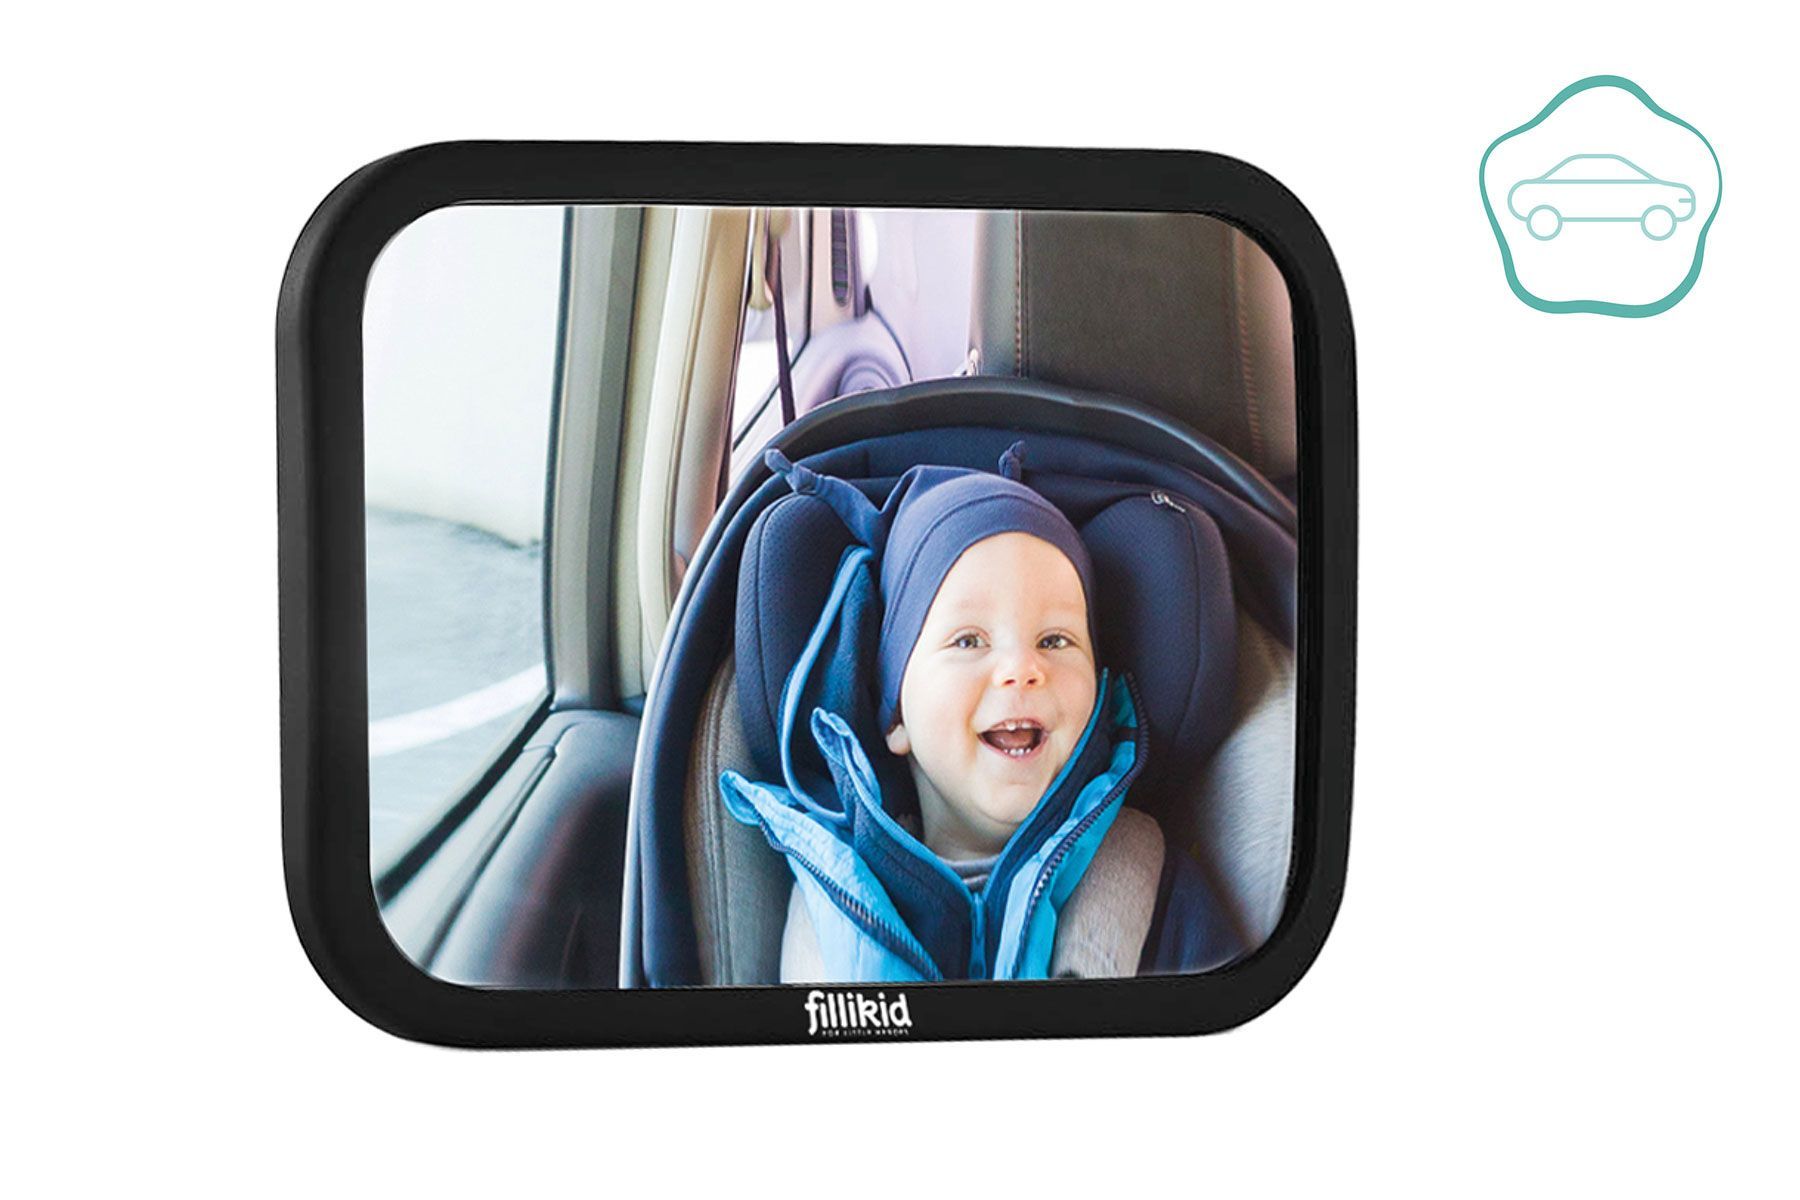 Autospiegel Baby 360° Verstelbaar voor Hoofdsteun Autostoel